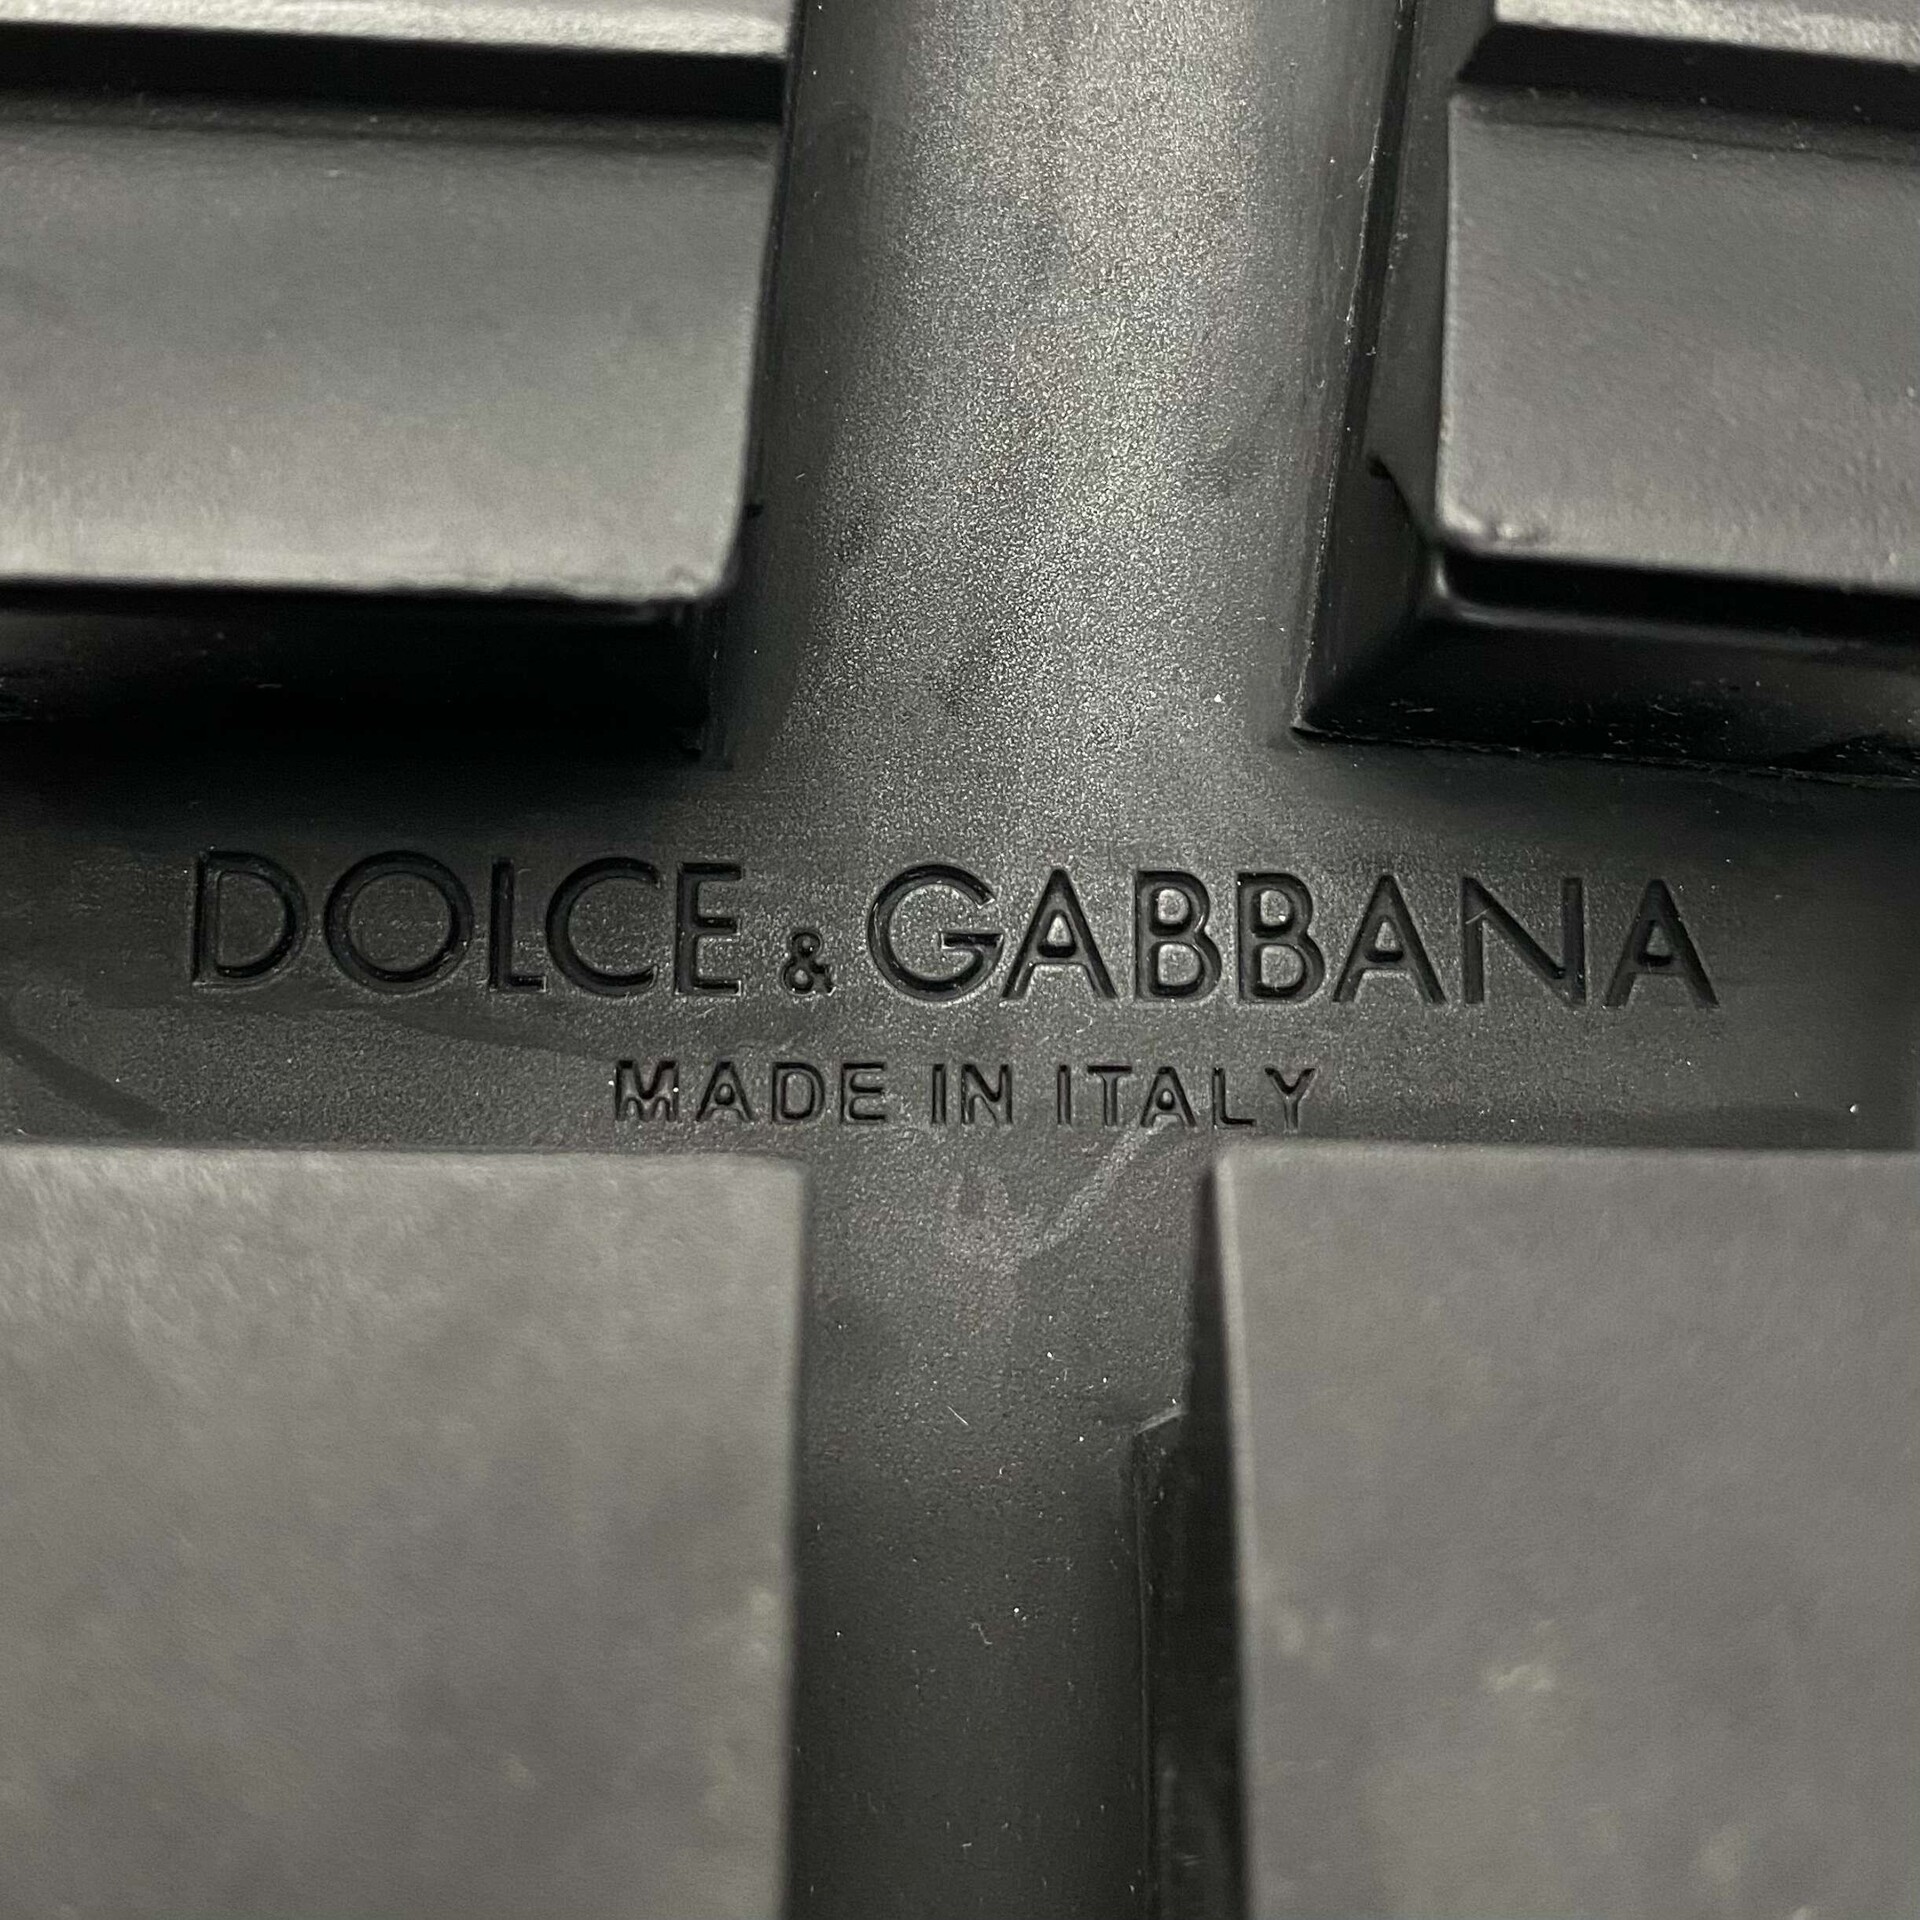 Tênis Dolce & Gabbana Super King Preto